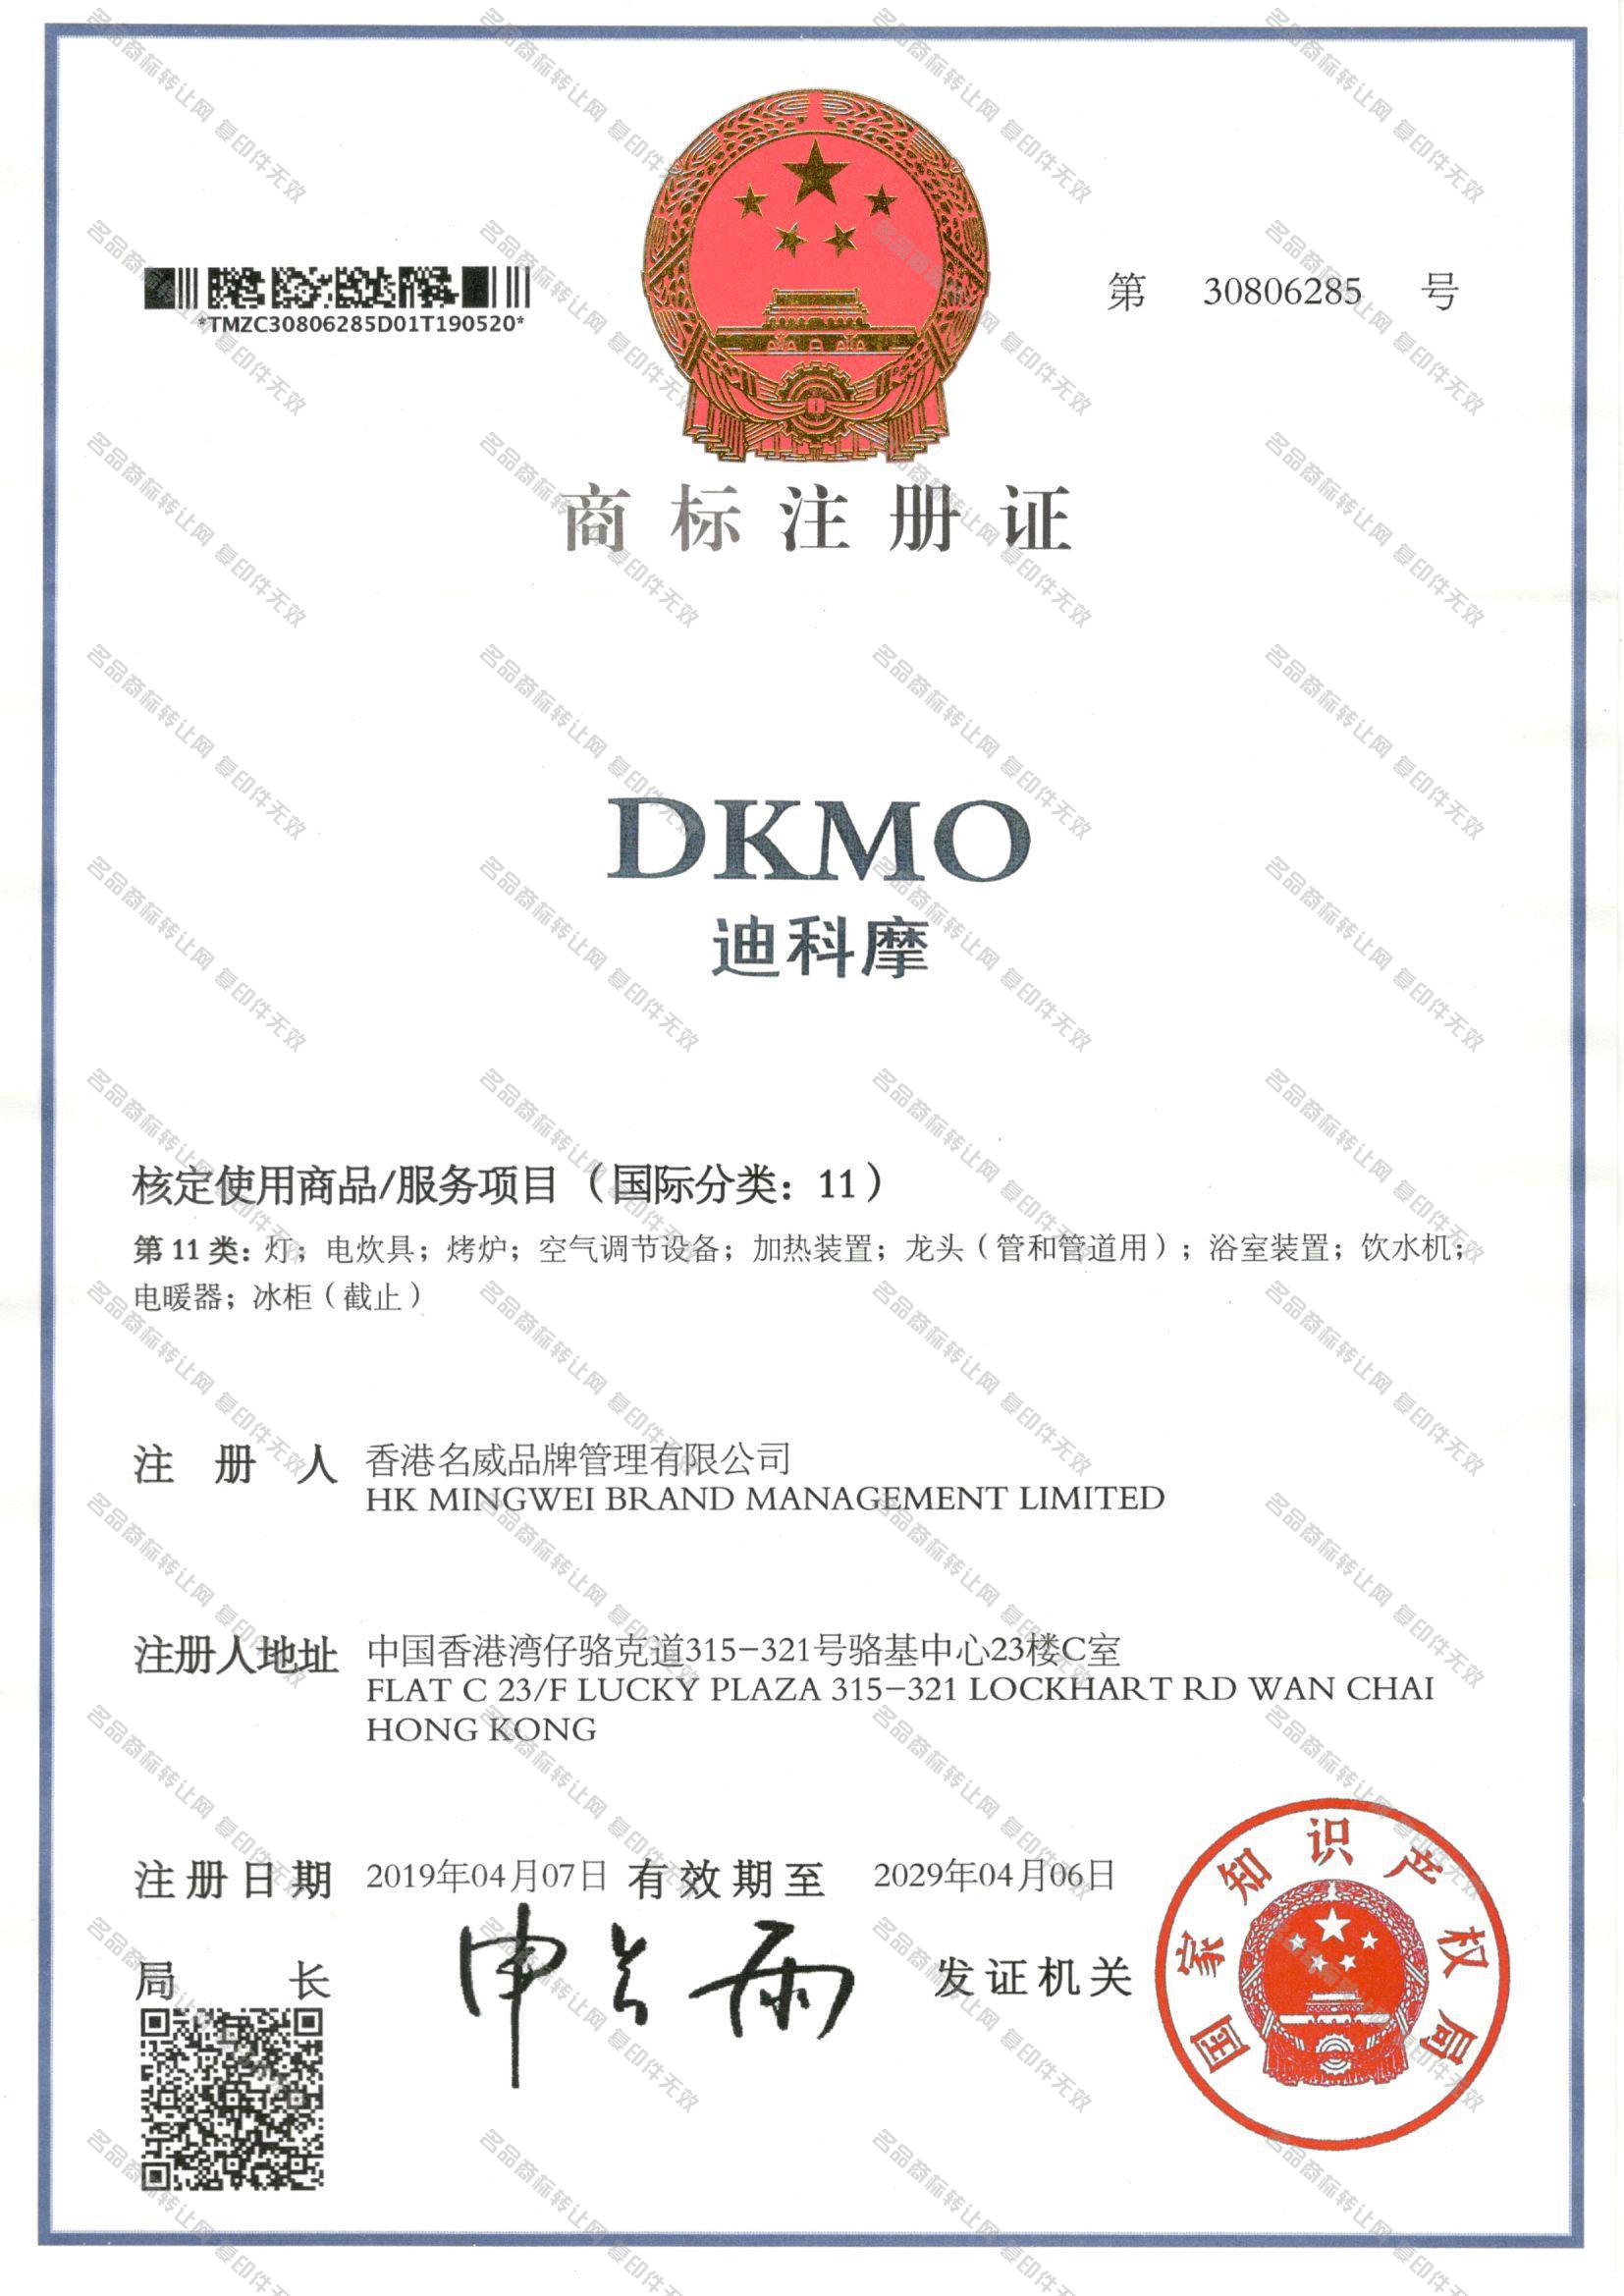 迪科摩 DKMO注册证